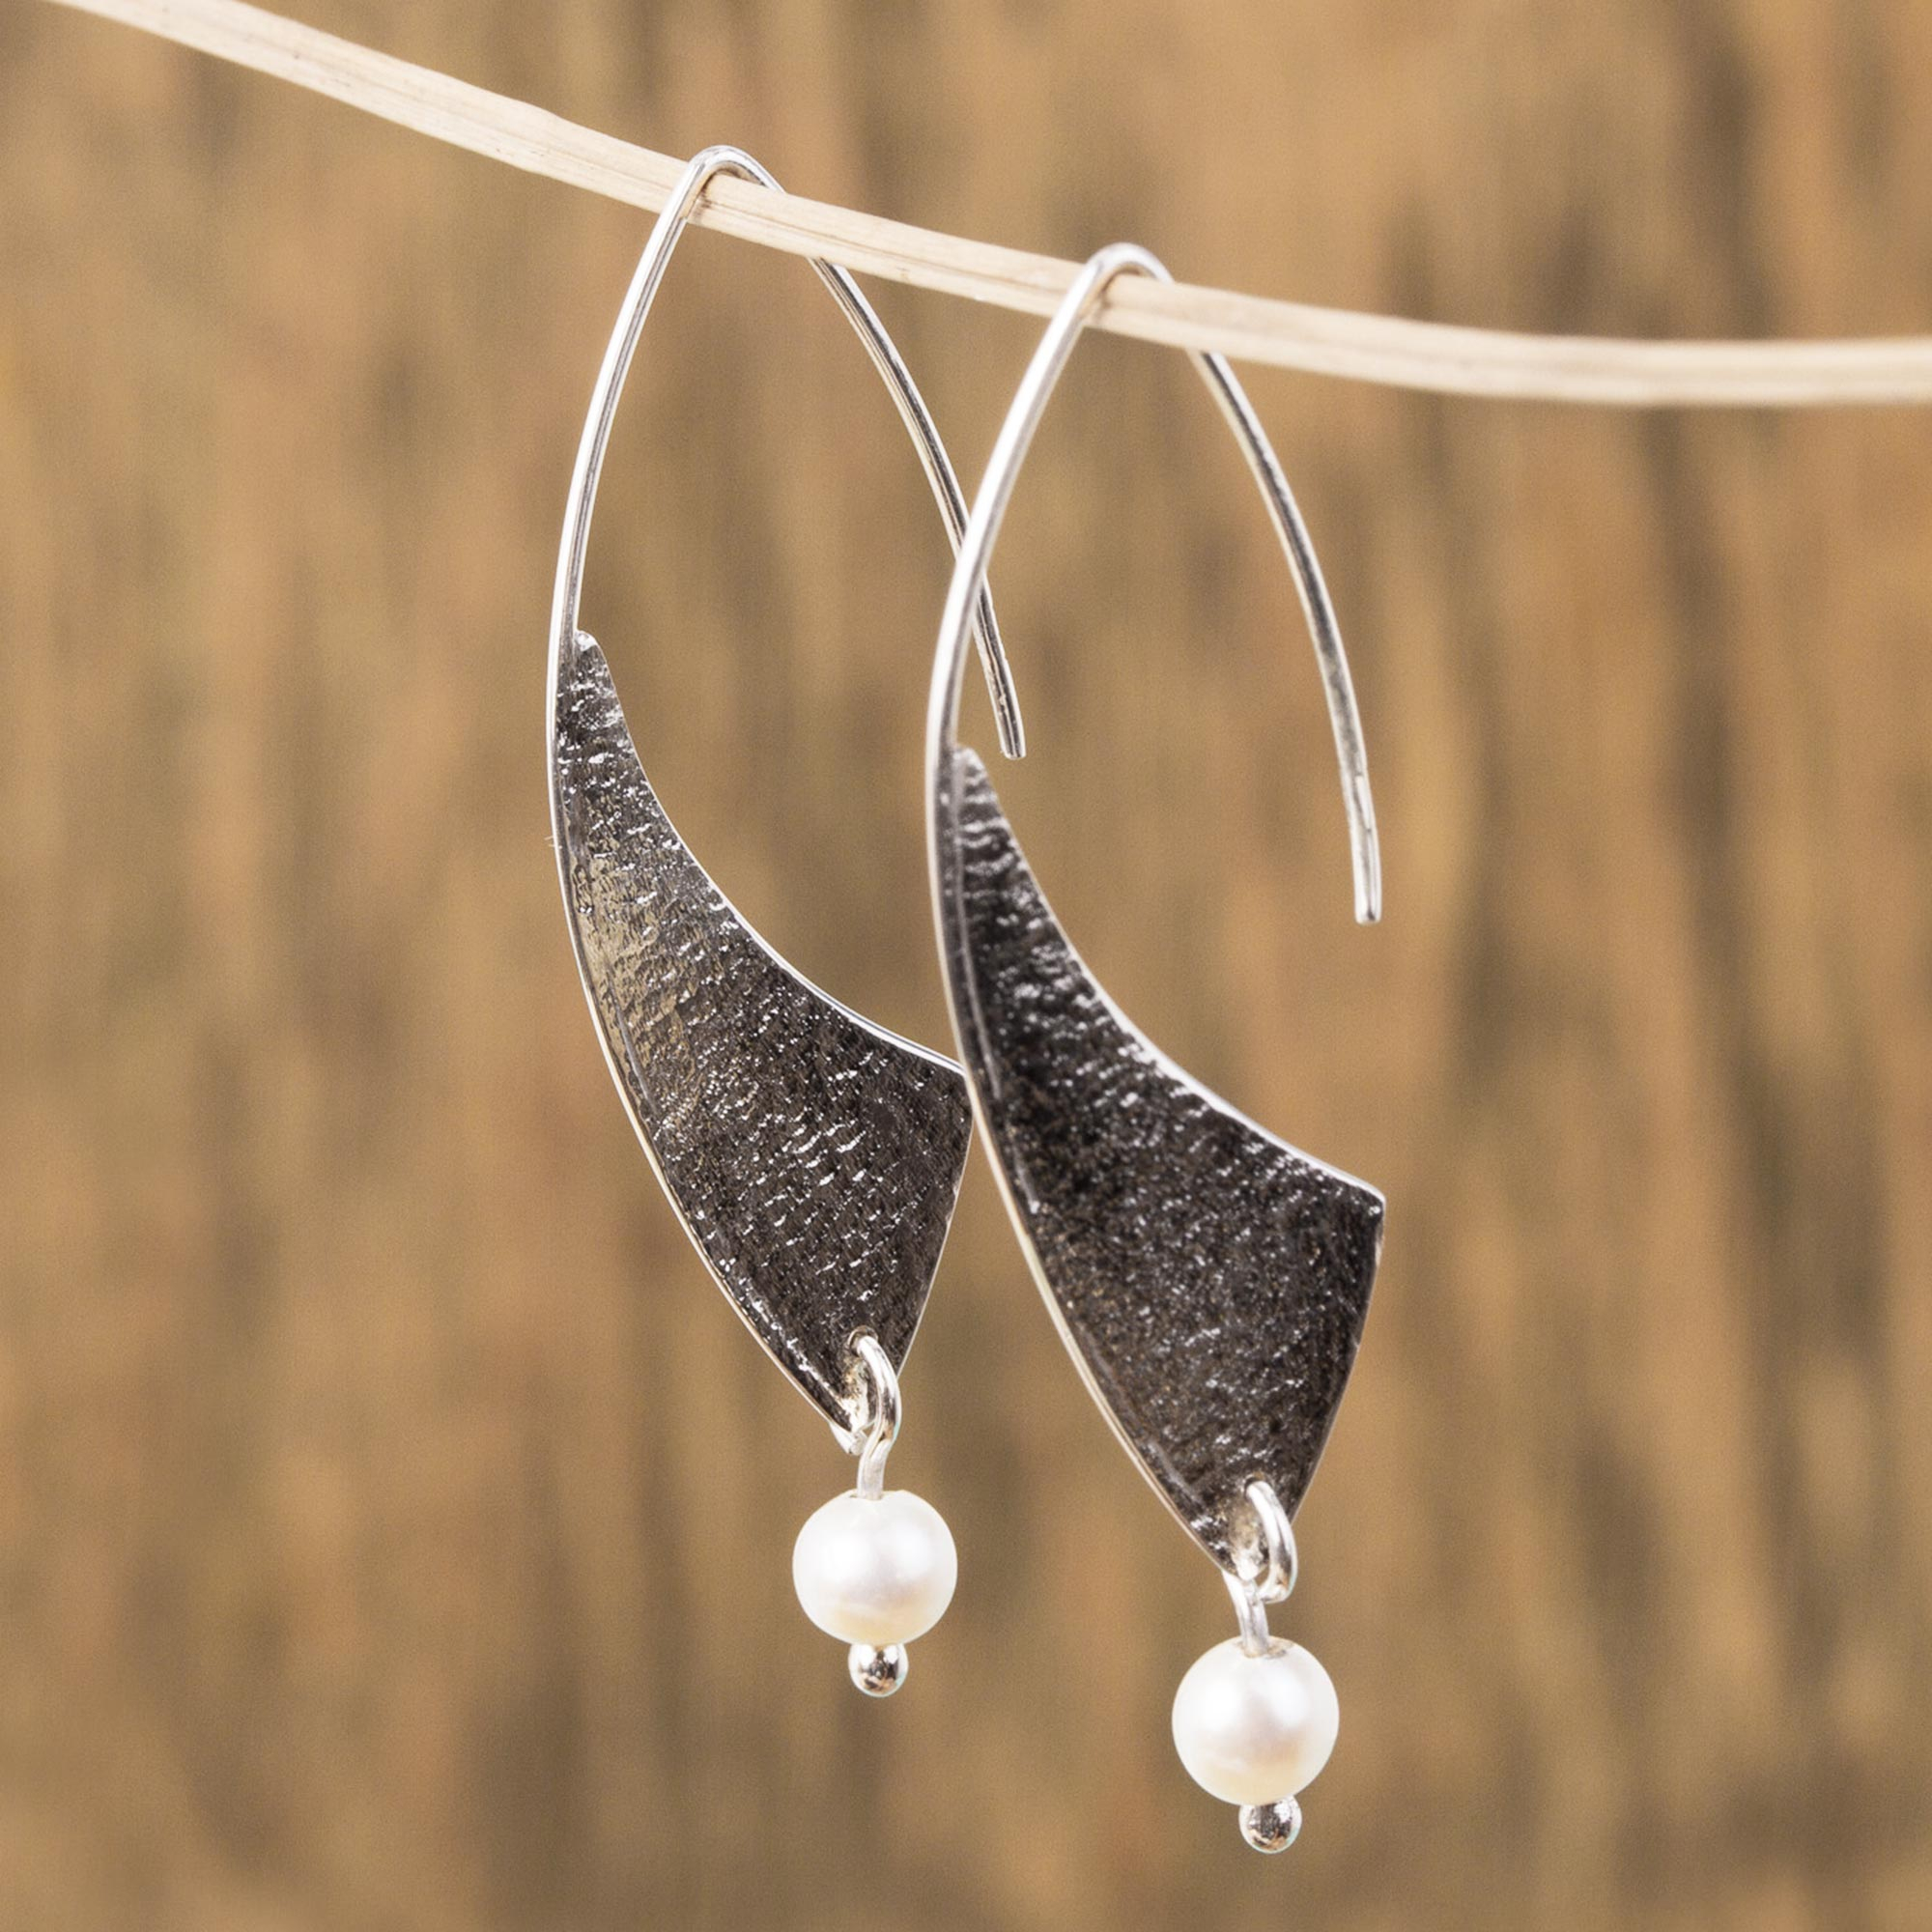 Textured Sterling Silver Earrings Handmade Israeli Jewelry Gift for Her Artisan Earring